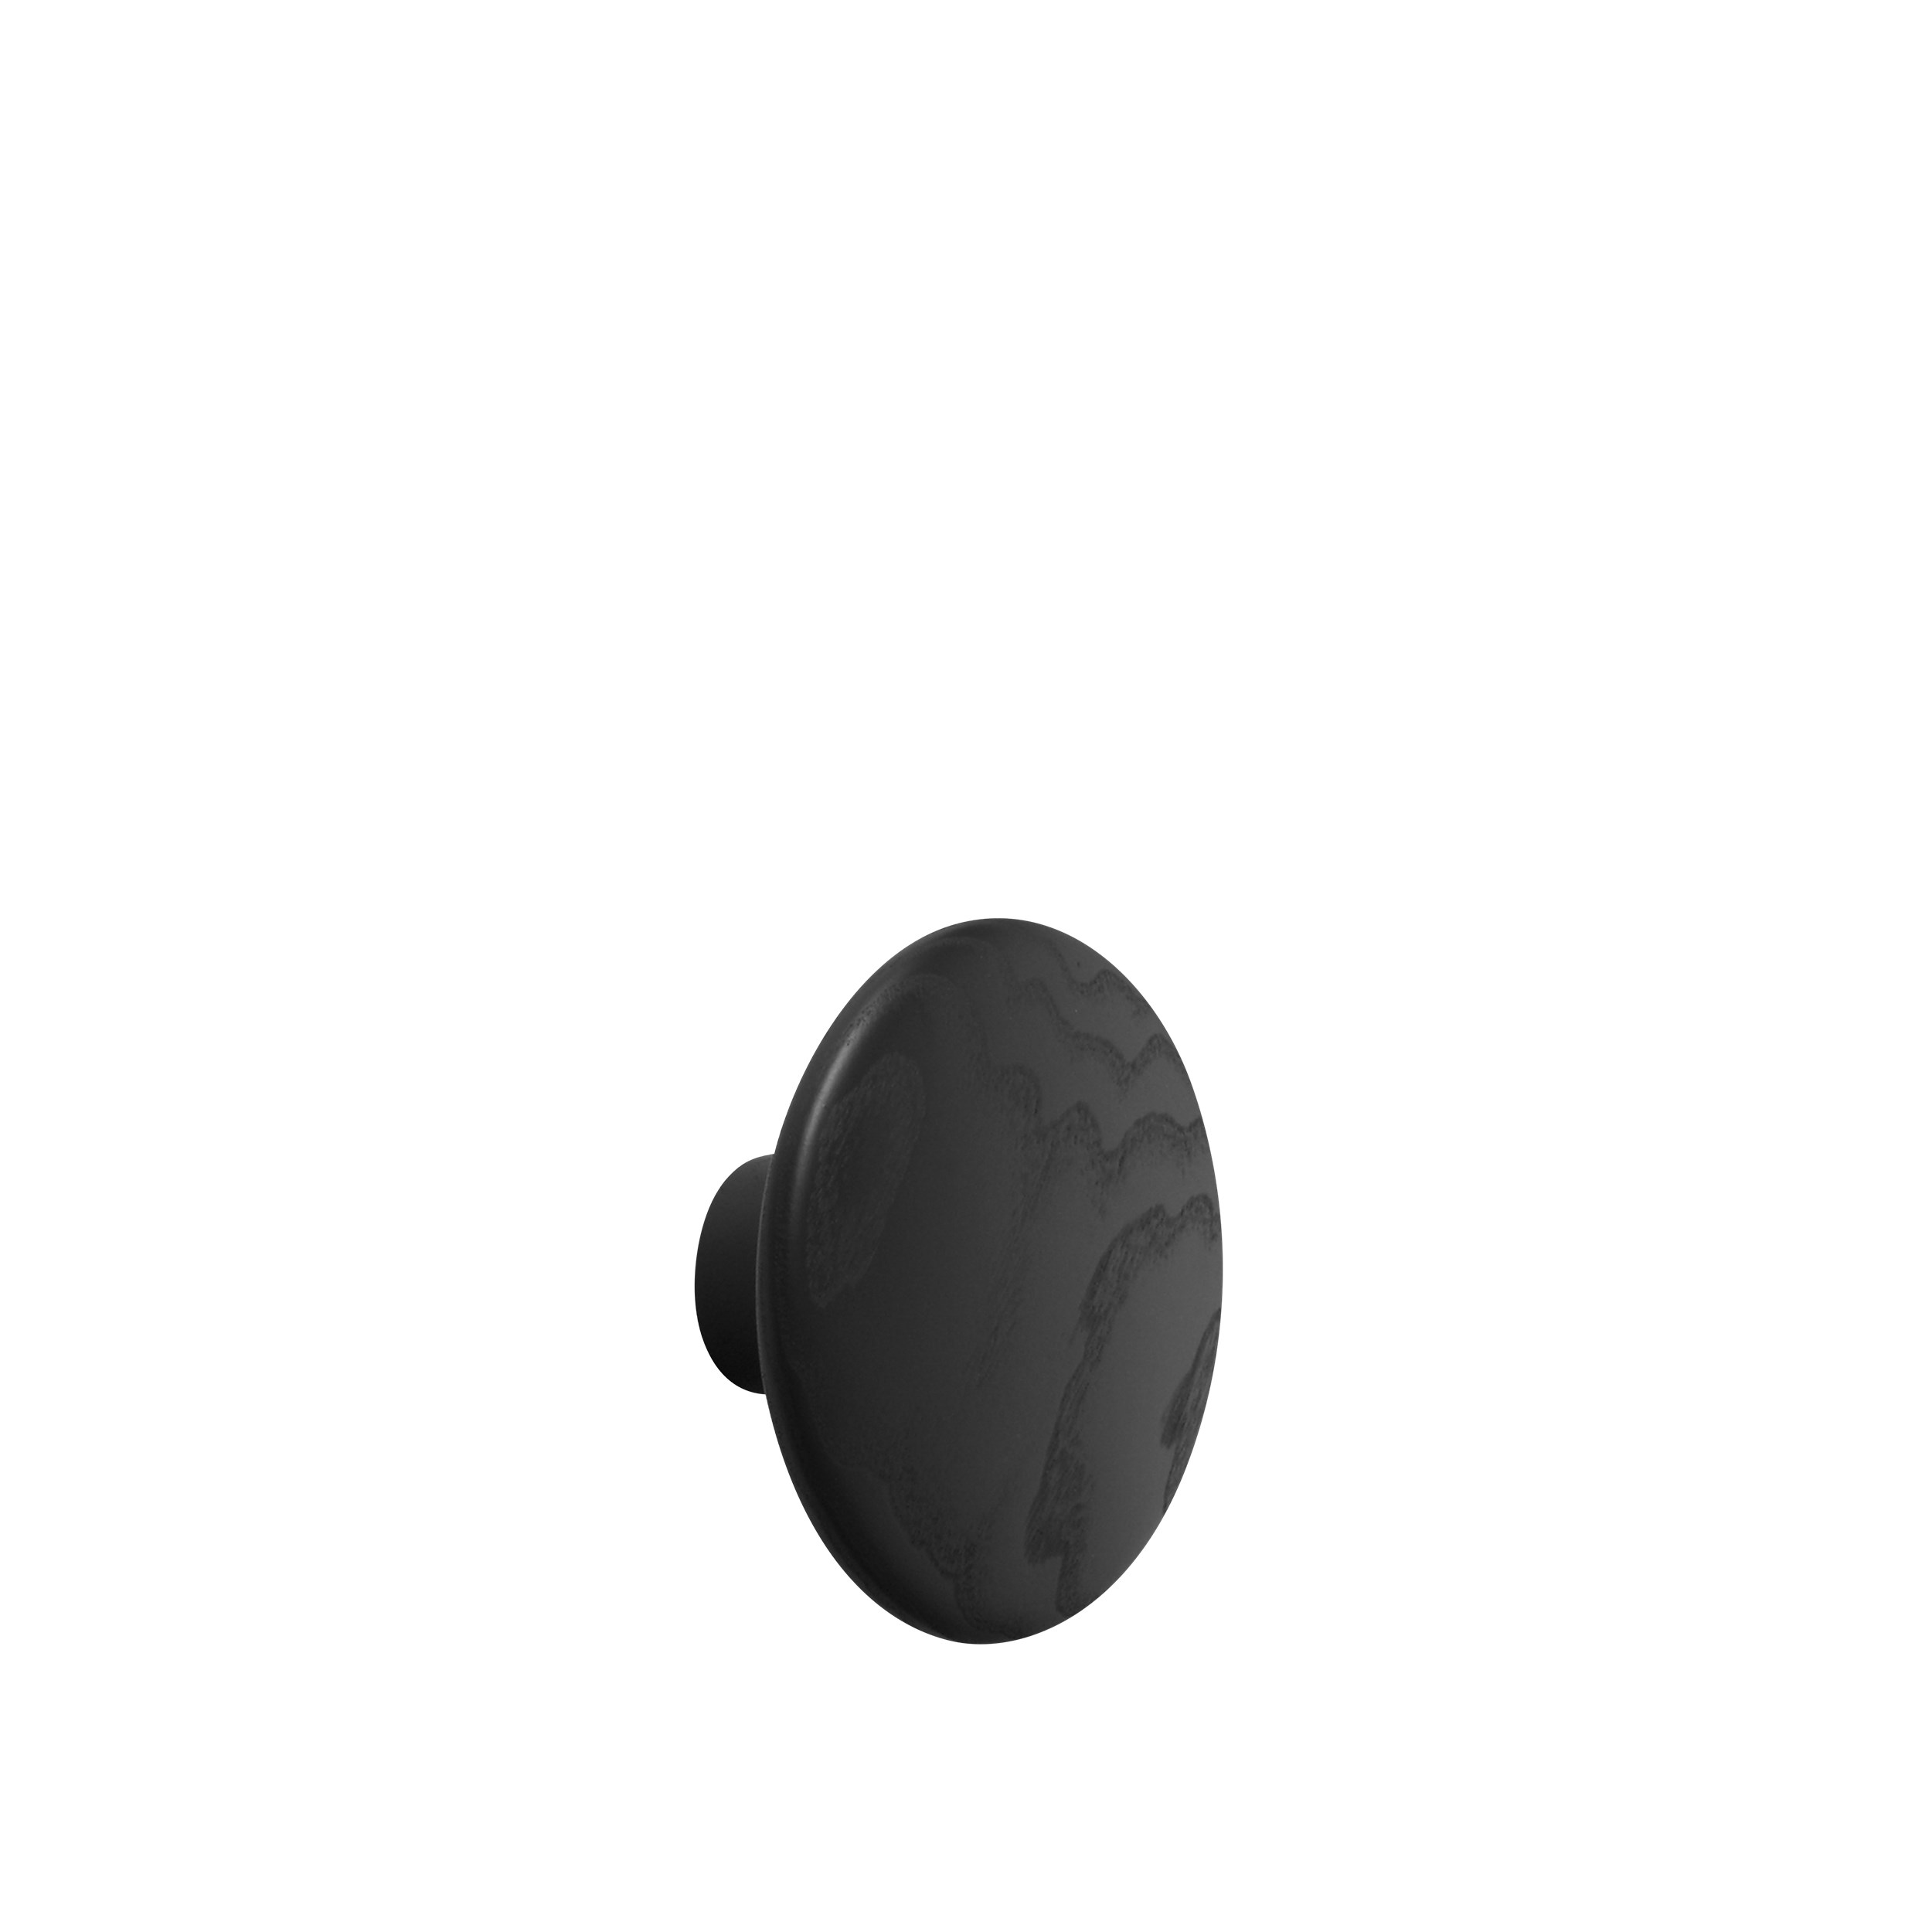 Dot wood medium Ø 13 cm black